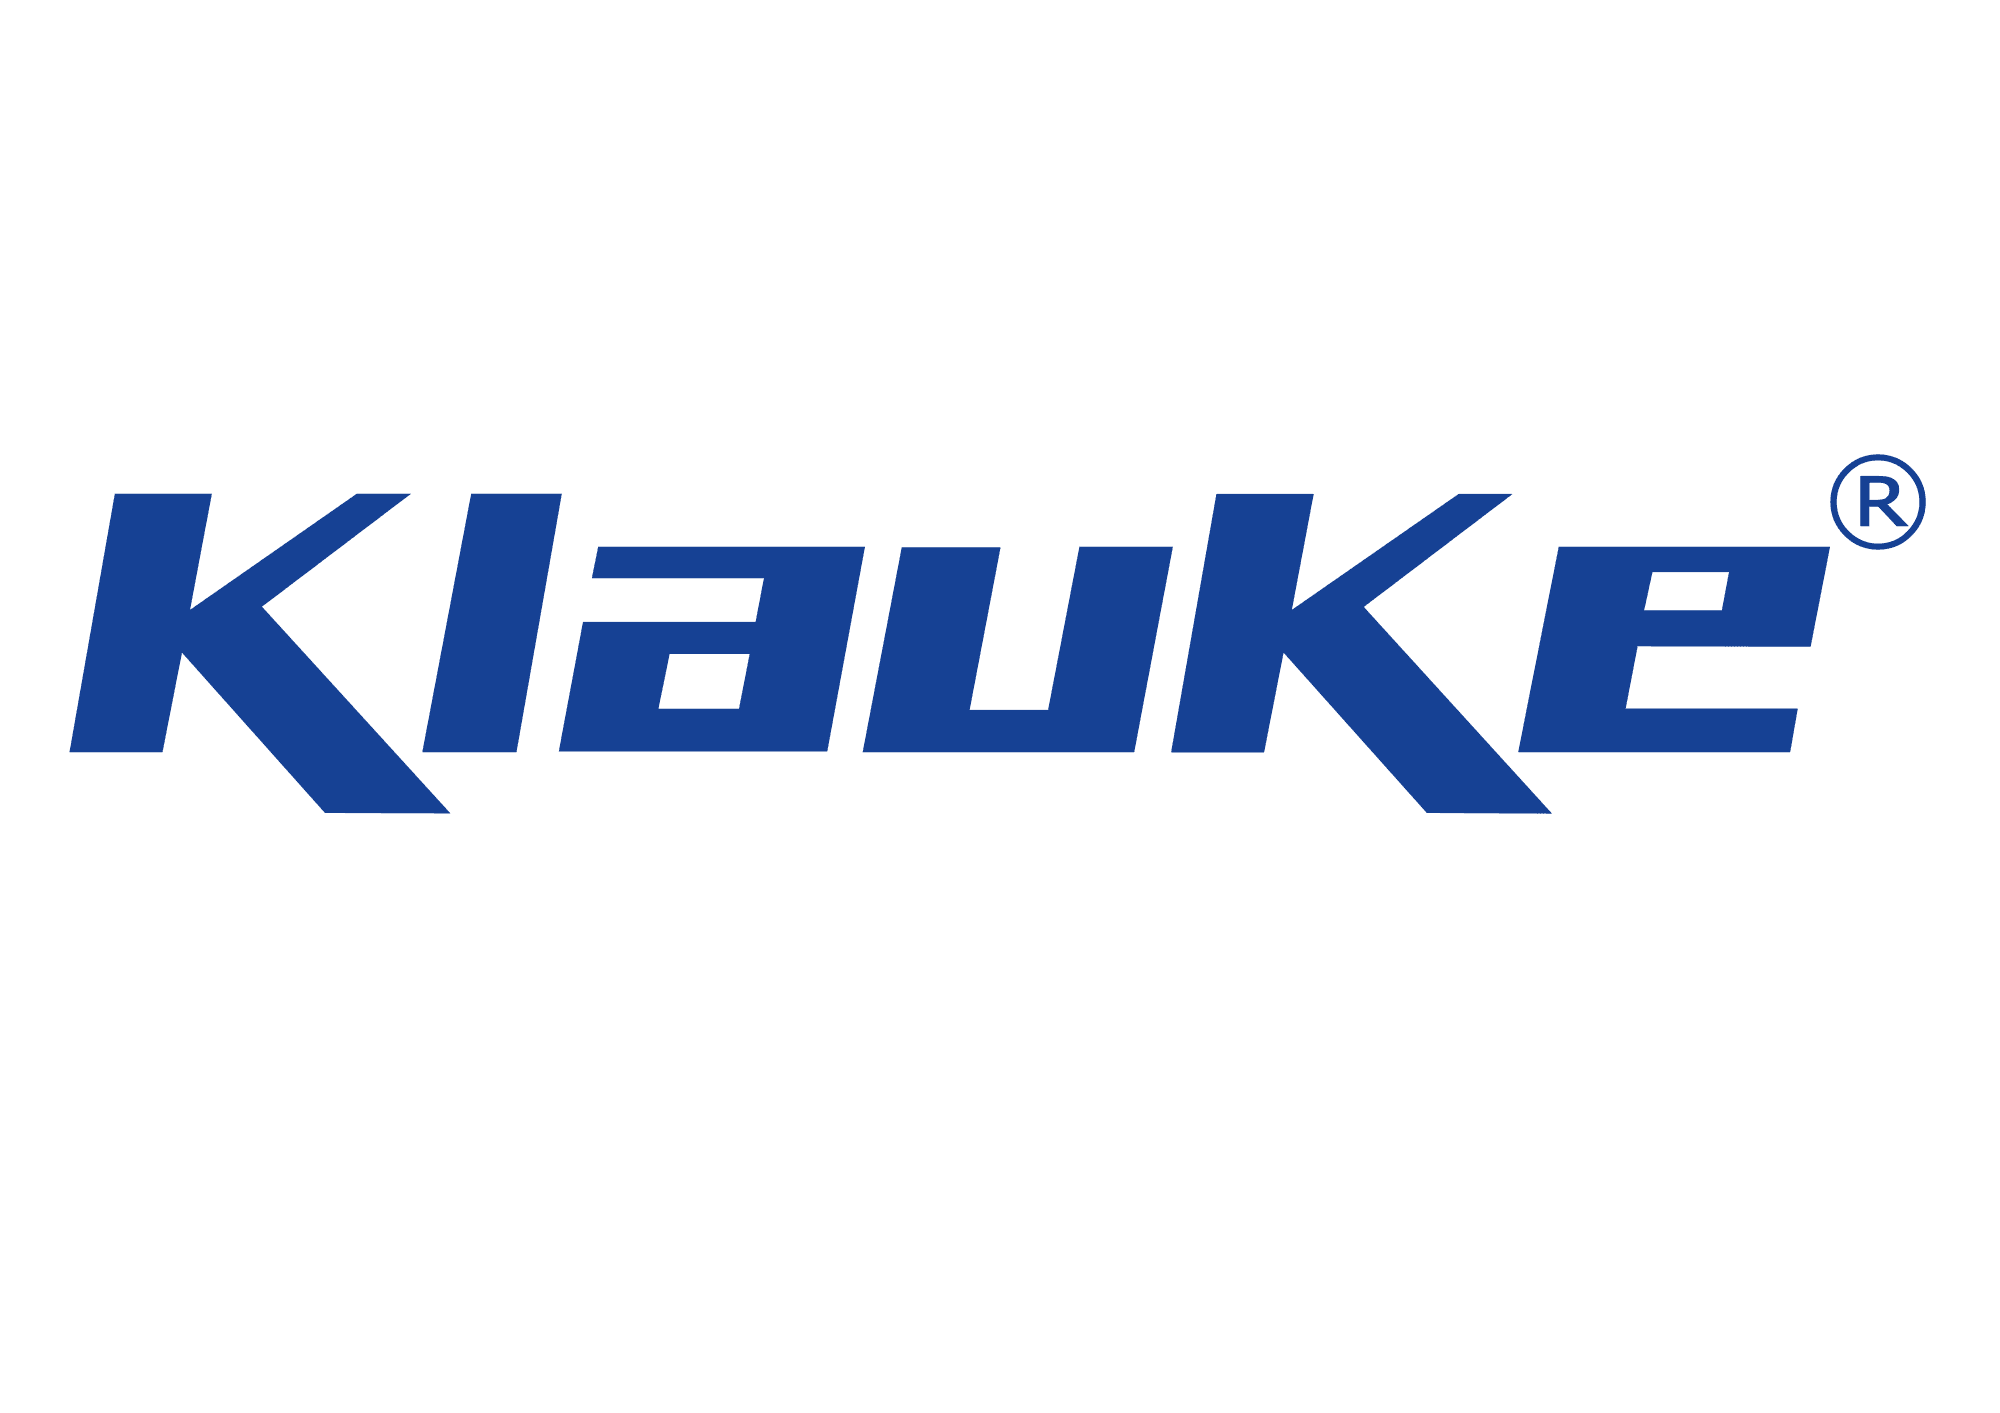 Производитель электротехнического оборудования Gustav Klauke GmbH